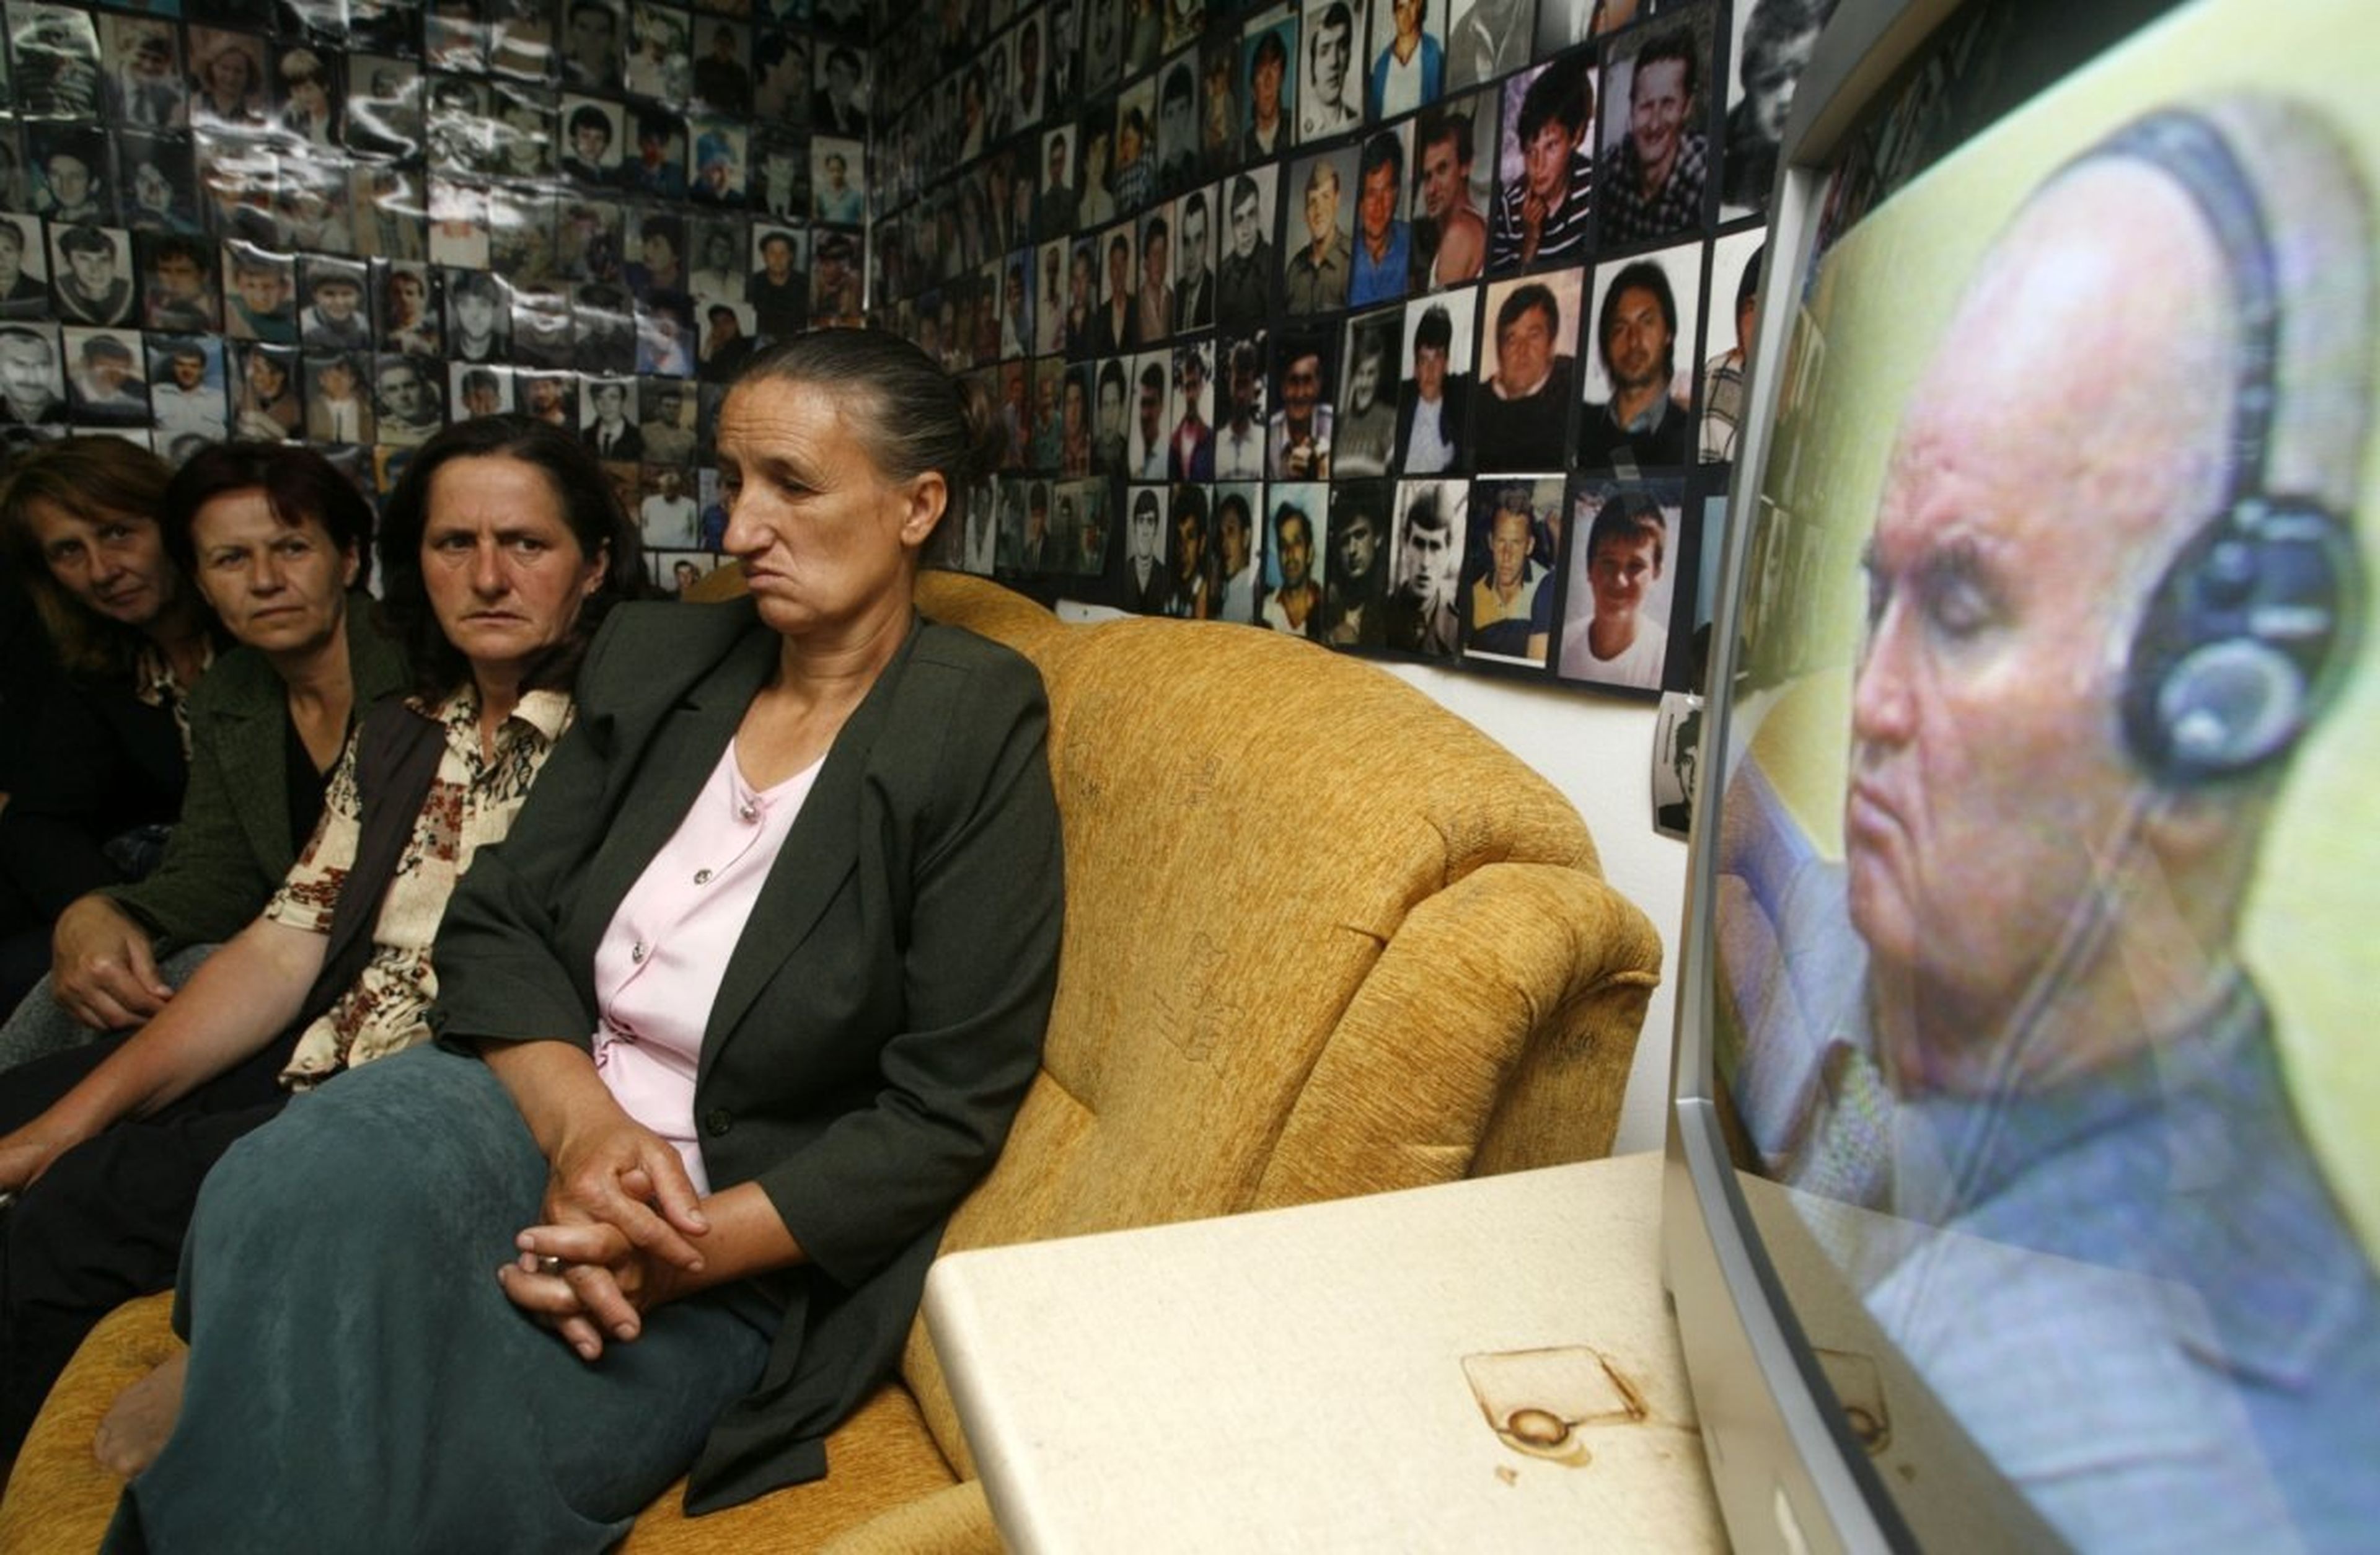 Mujeres musulmanas bosnias de Srebrenica, rodeadas de fotografías de víctimas del genocidio ocurrido en la ciudad durante la guerra bosnia de 1992 a 1995, miran la retransmisión televisiva del juicio contra Mladic en Tuzla, el 3 de junio de 2011.